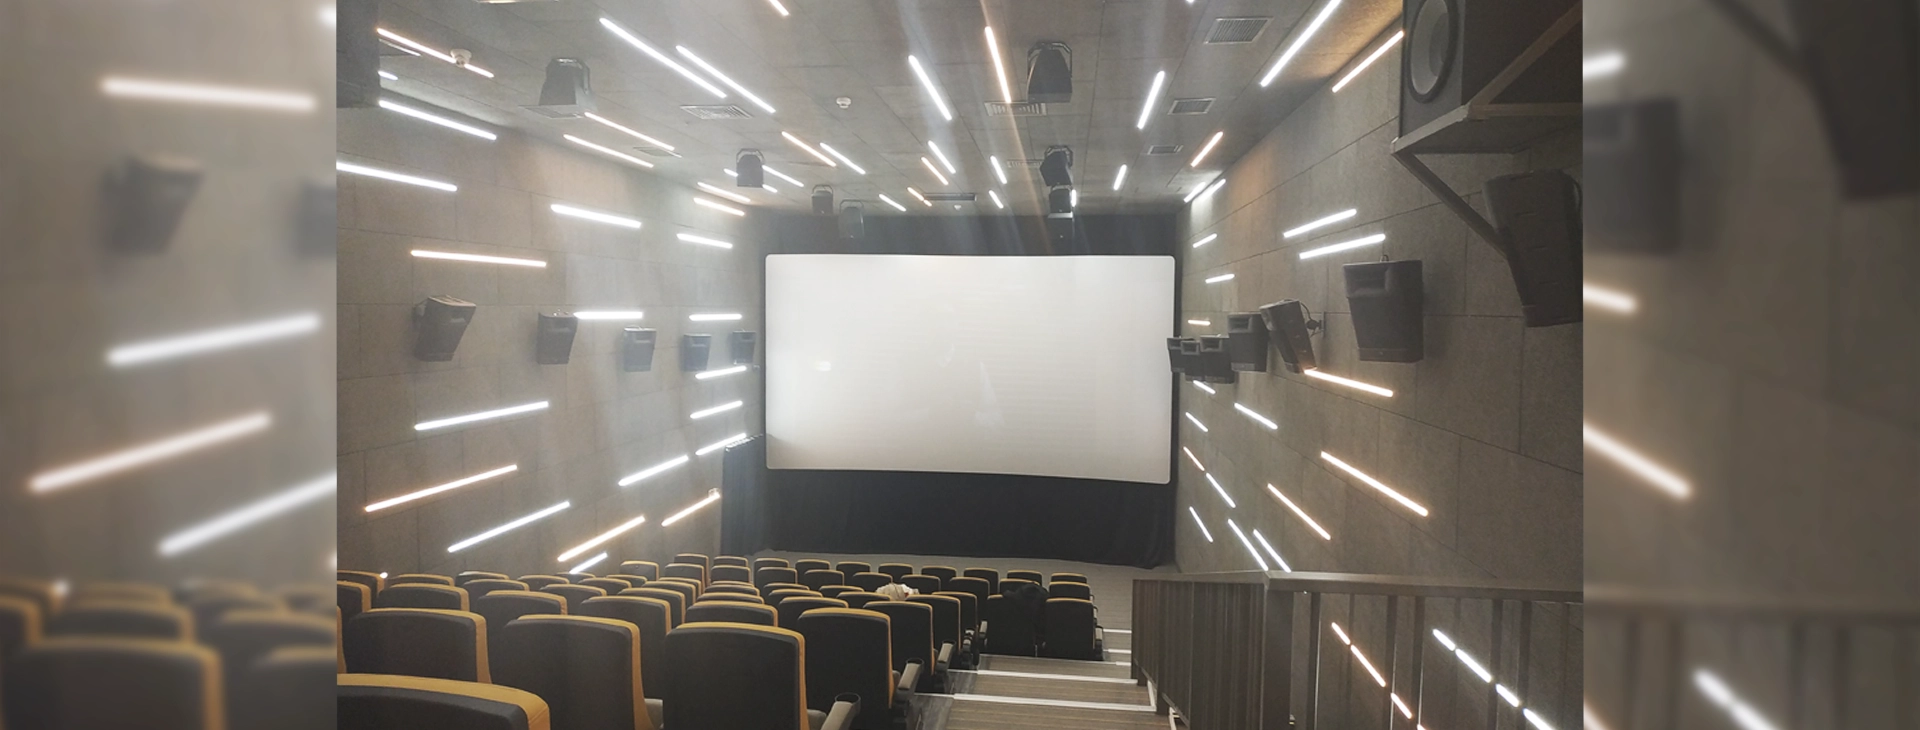 Освещение кинотеатров в ЦУМе г. Бишкек